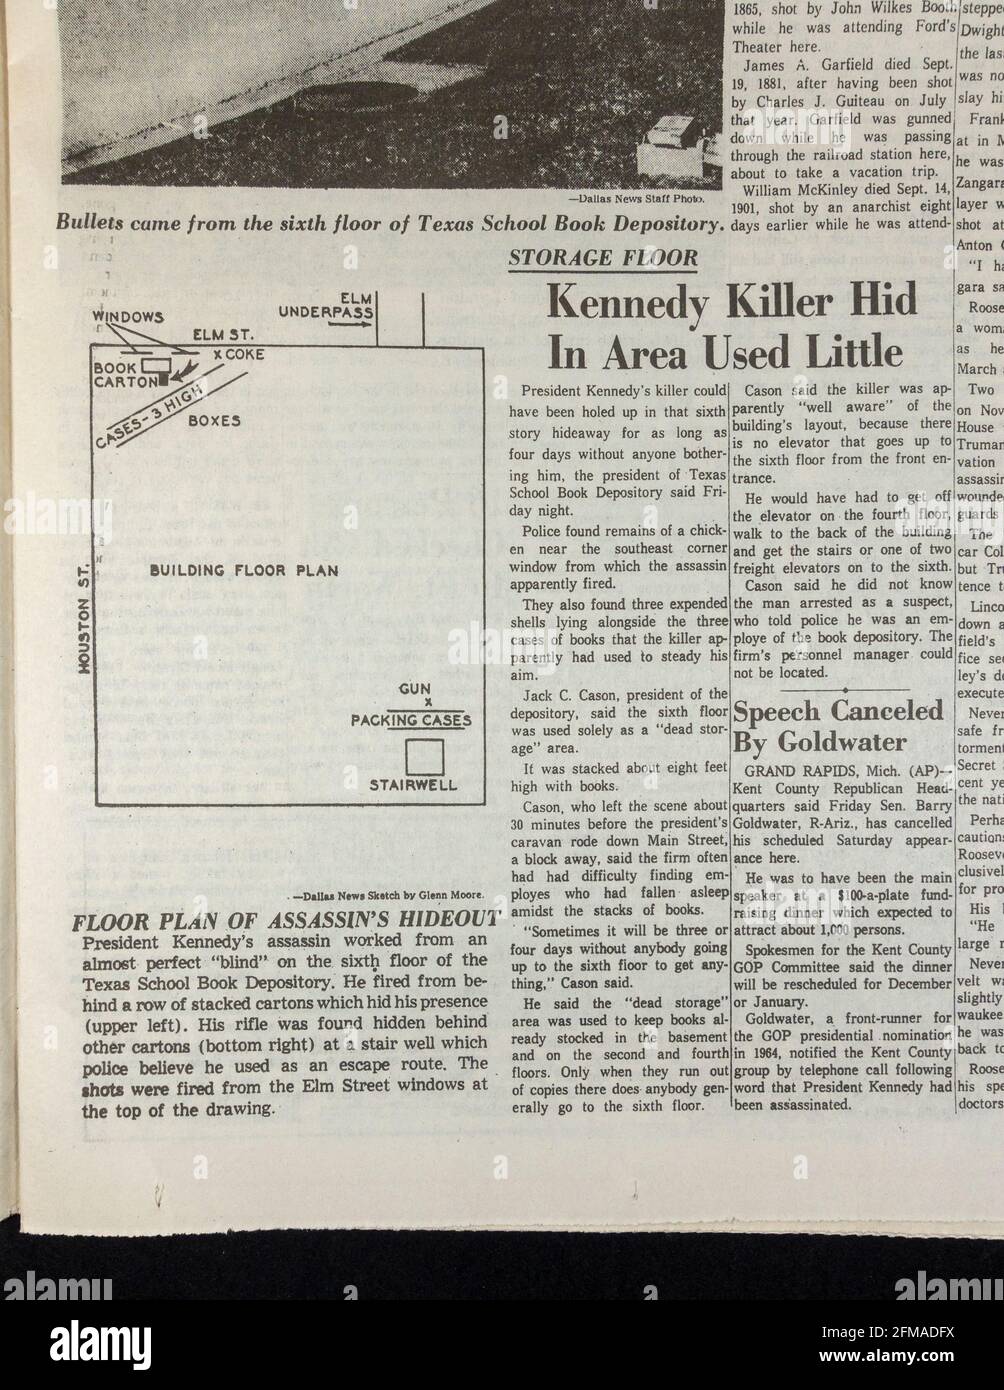 Artikel und Grundriß von Book Depository, Dallas Morning News (Nachbildung), 23. November 1963 nach der Attentat auf John F. Kennedy. Stockfoto